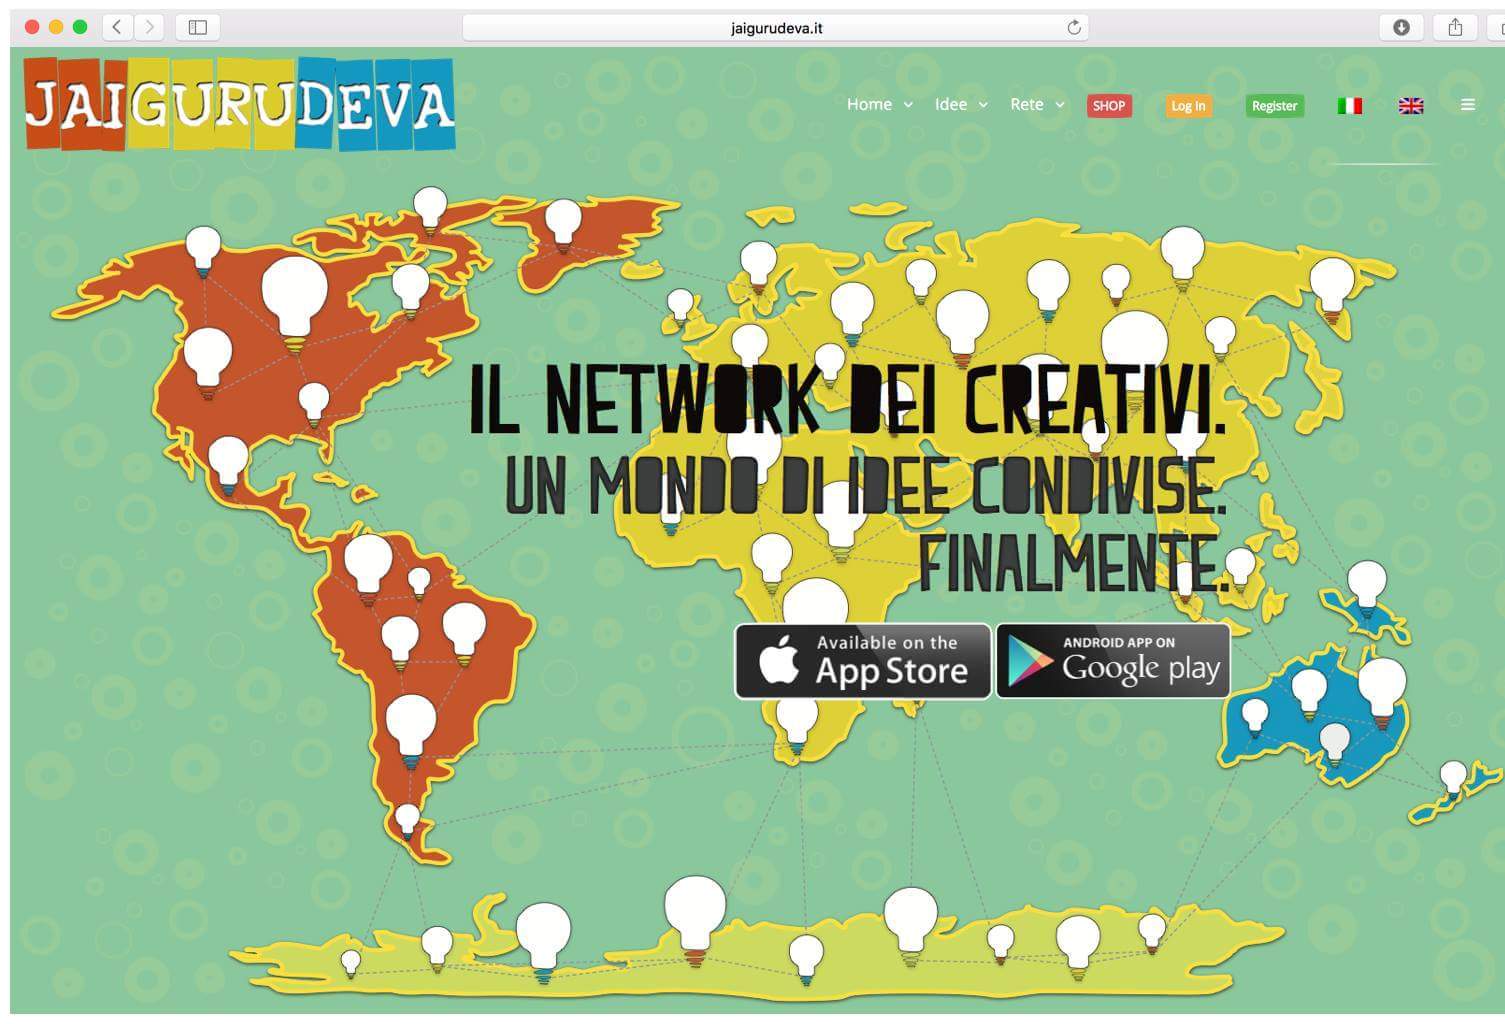 Jai Guru Deva. La App dei creativi e’ online!